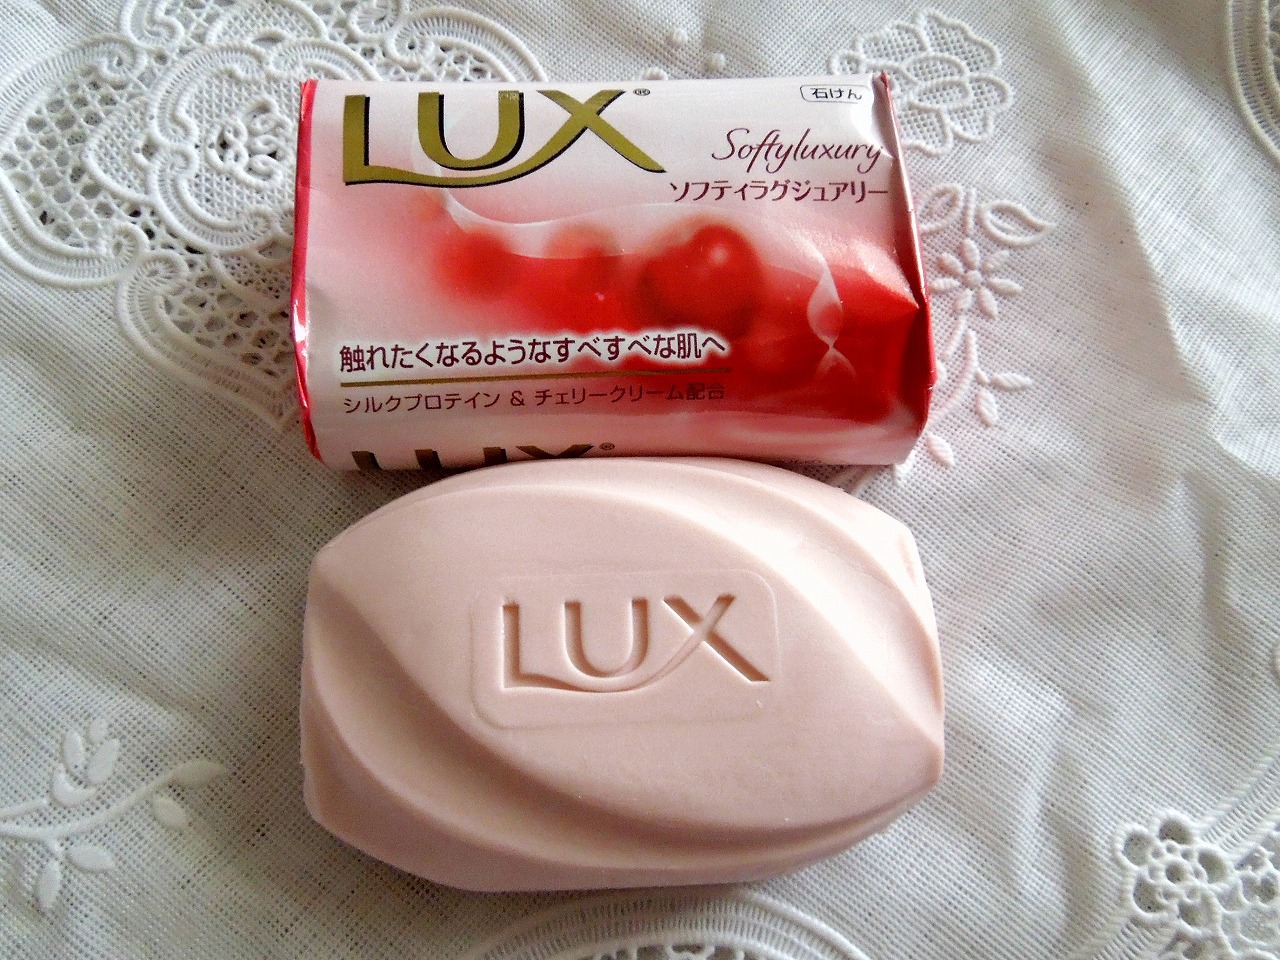 LUX ソフティラグジュアリーの固形石鹸3個 - ボディケア